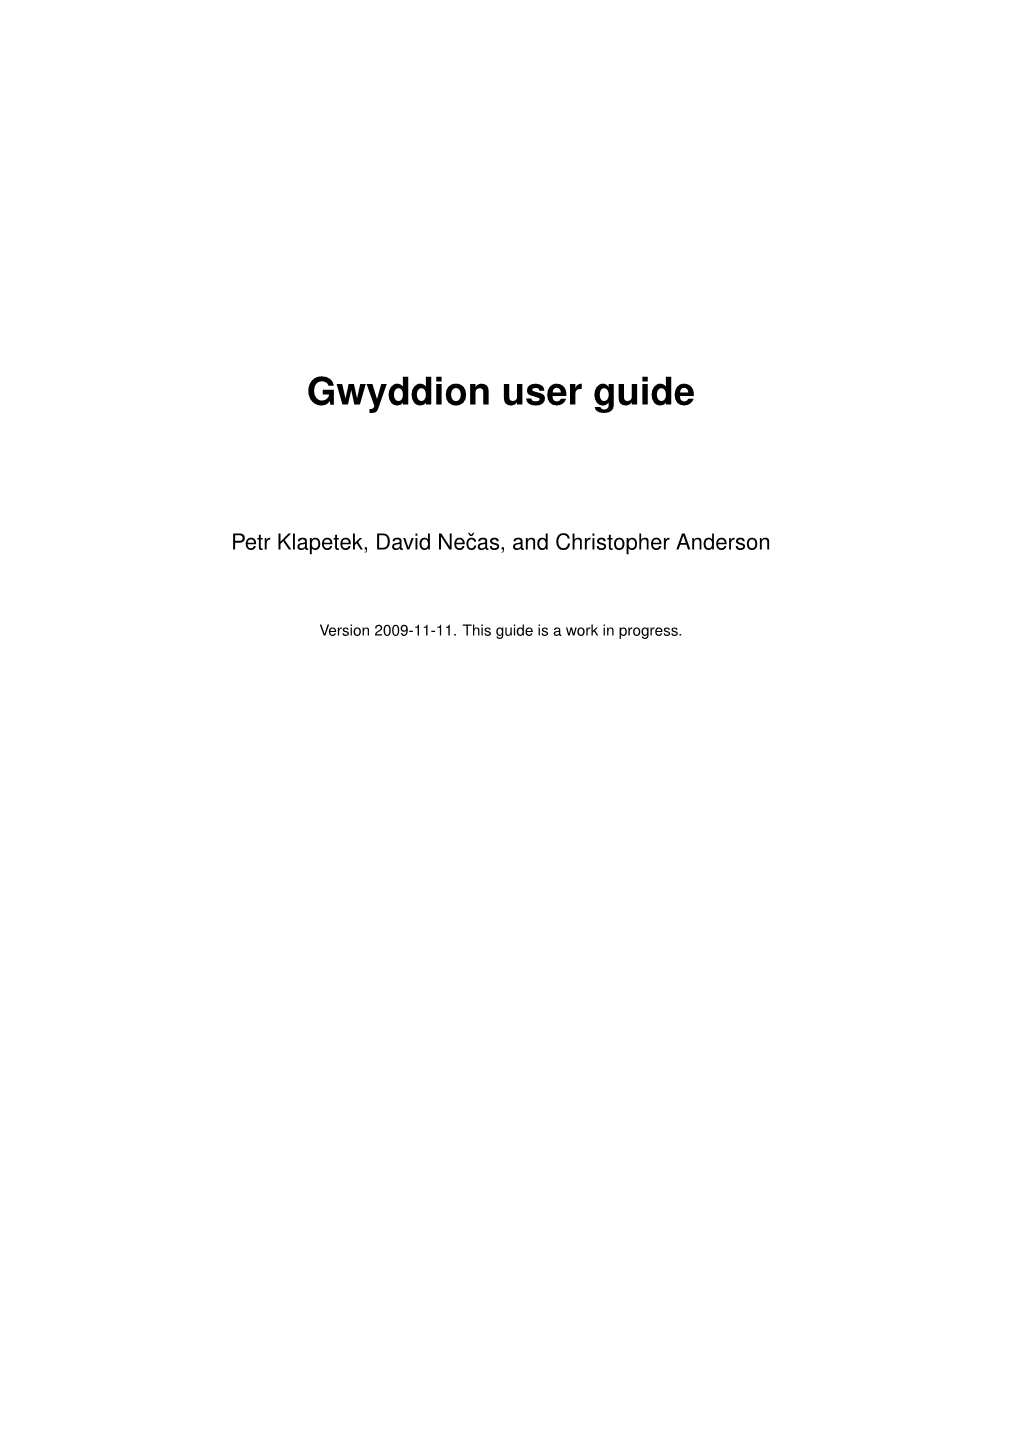 Gwyddion-User-Guide-En-2009-11-11